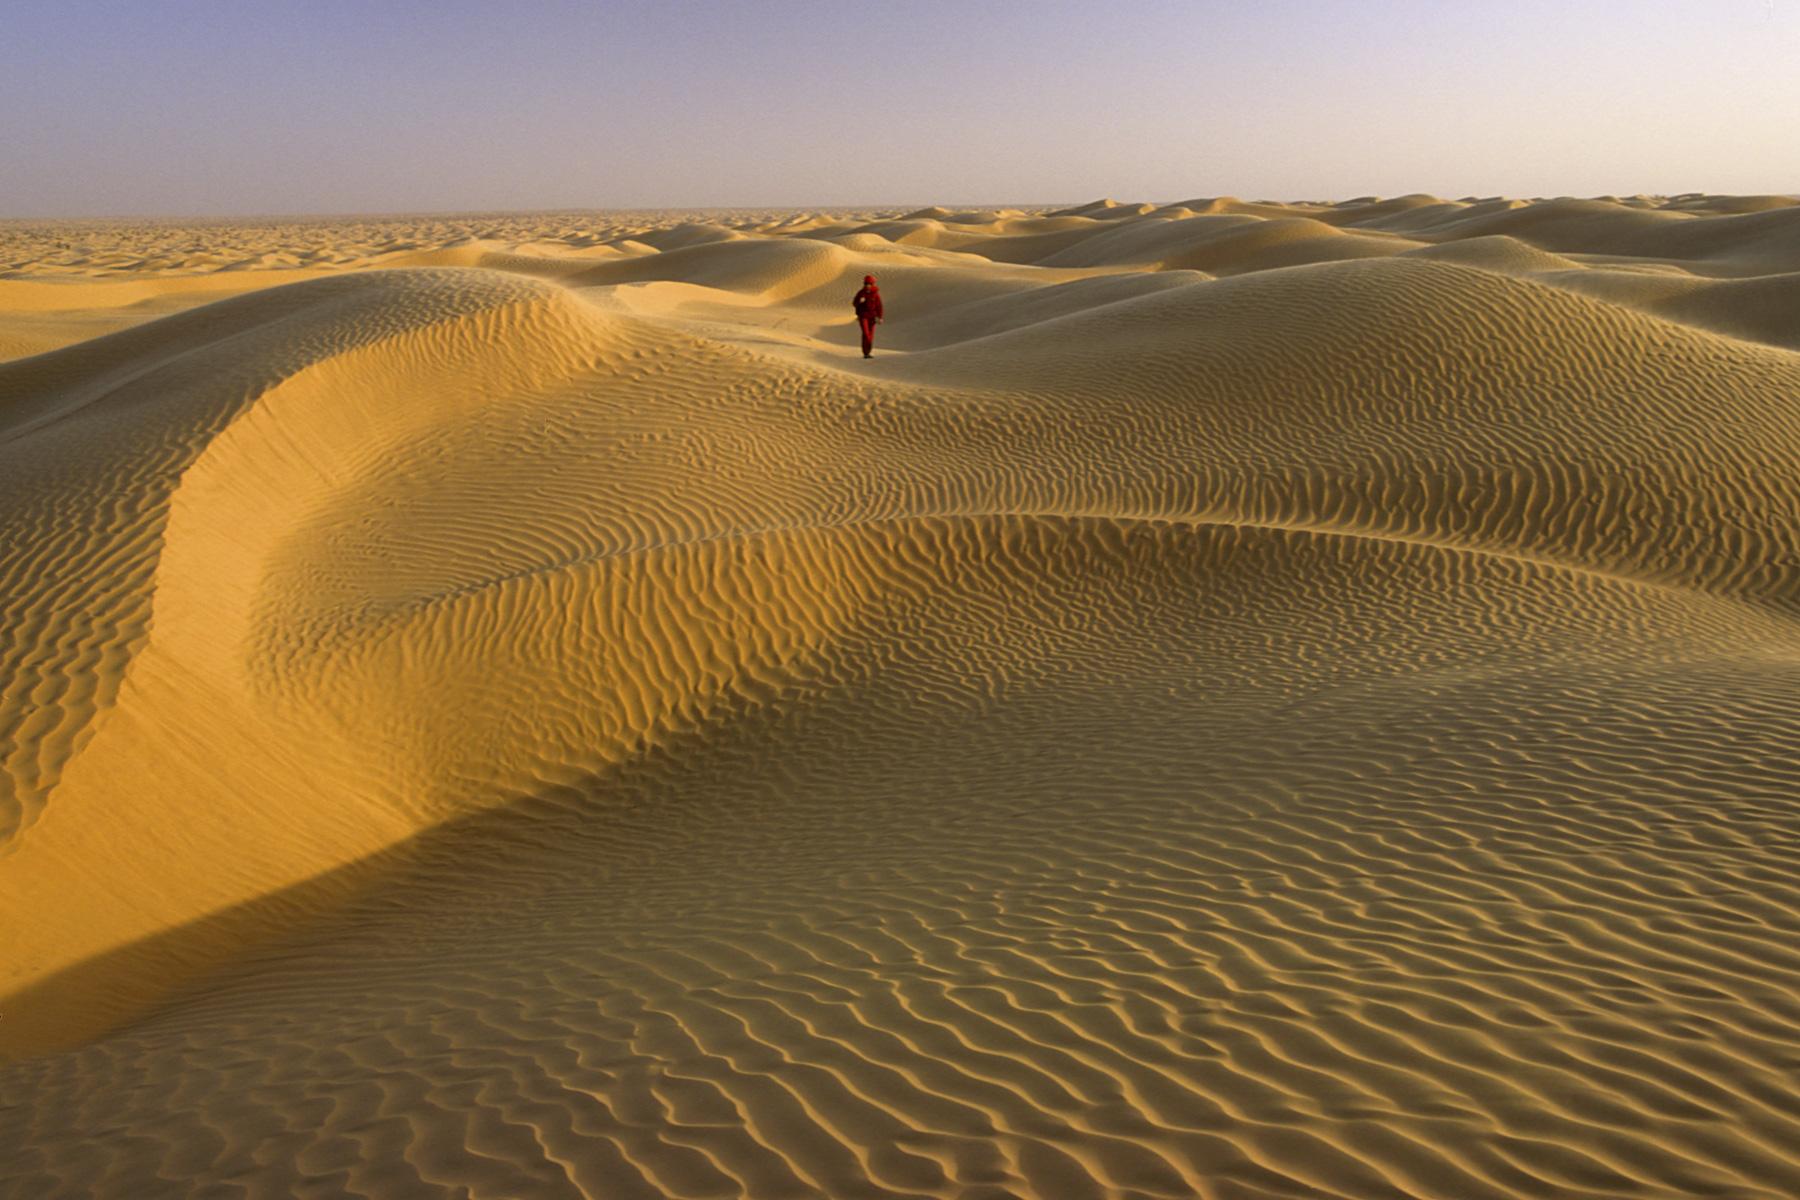 Sud Tunisien. Près de Ksar Ghilane. Coucher de soleil dans les dunes avec personnage marchant dans le fond.